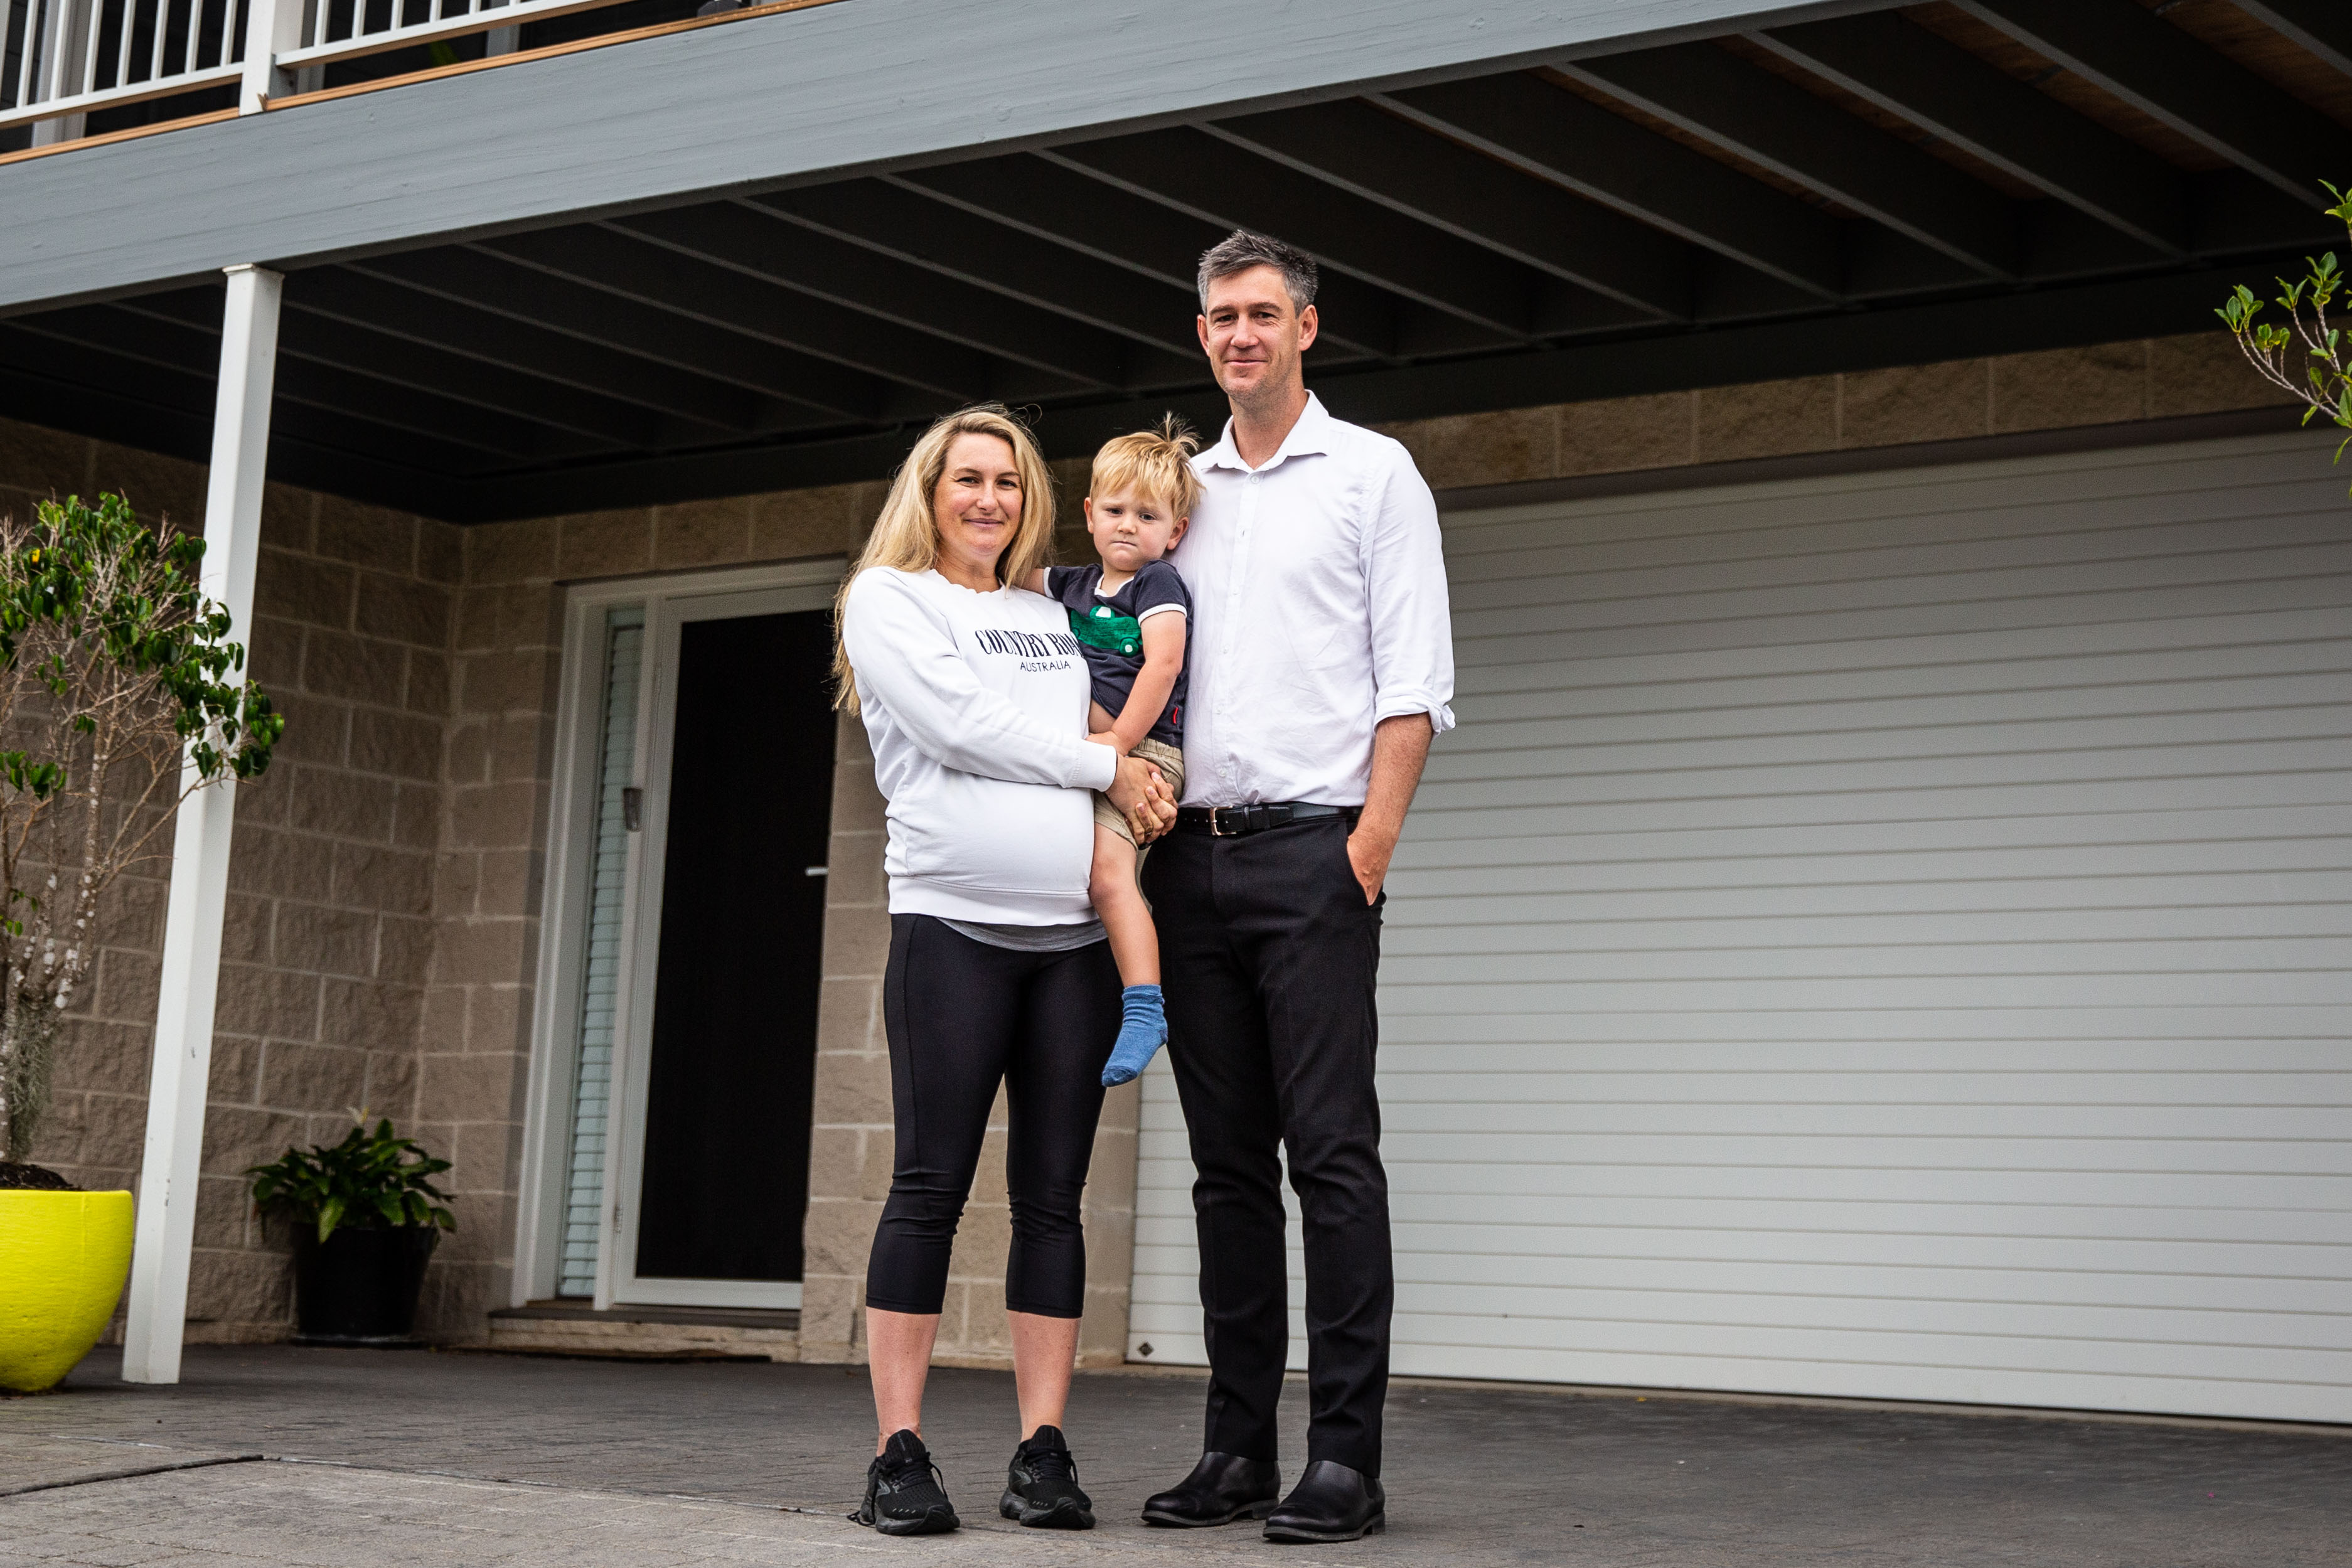 Fiona Fagan 和 Richard Sykes 站在他们的车库前，Fiona 抱着他们的儿子。